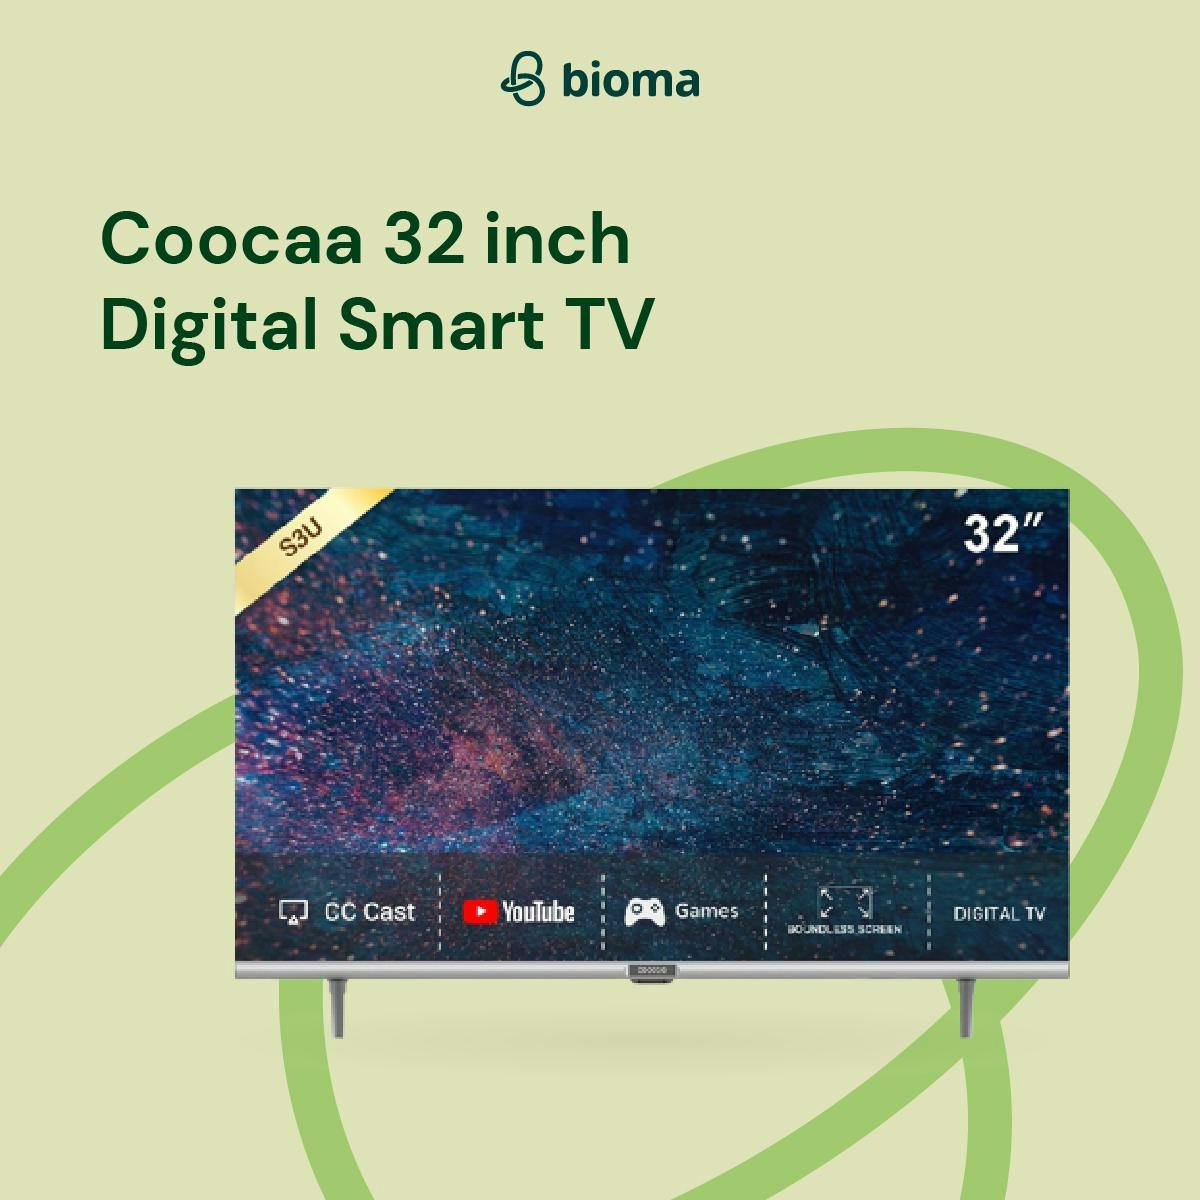 Coocaa 32 inch Digital Smart TV